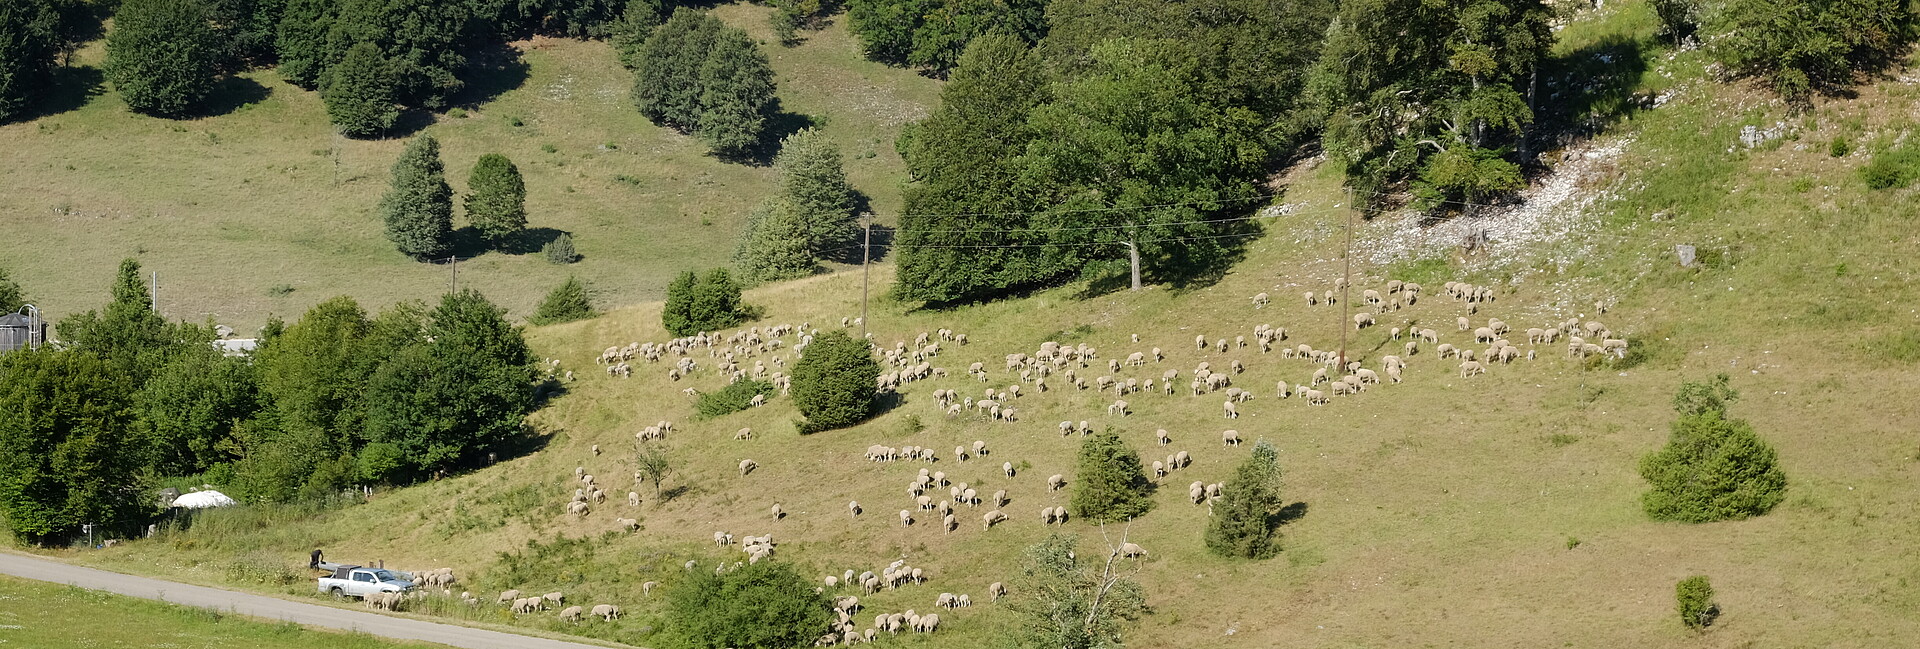 Schafe weiden auf artenreichen Magerrassen und werden vielerorts zur Landschaftspflege eingesetzt.